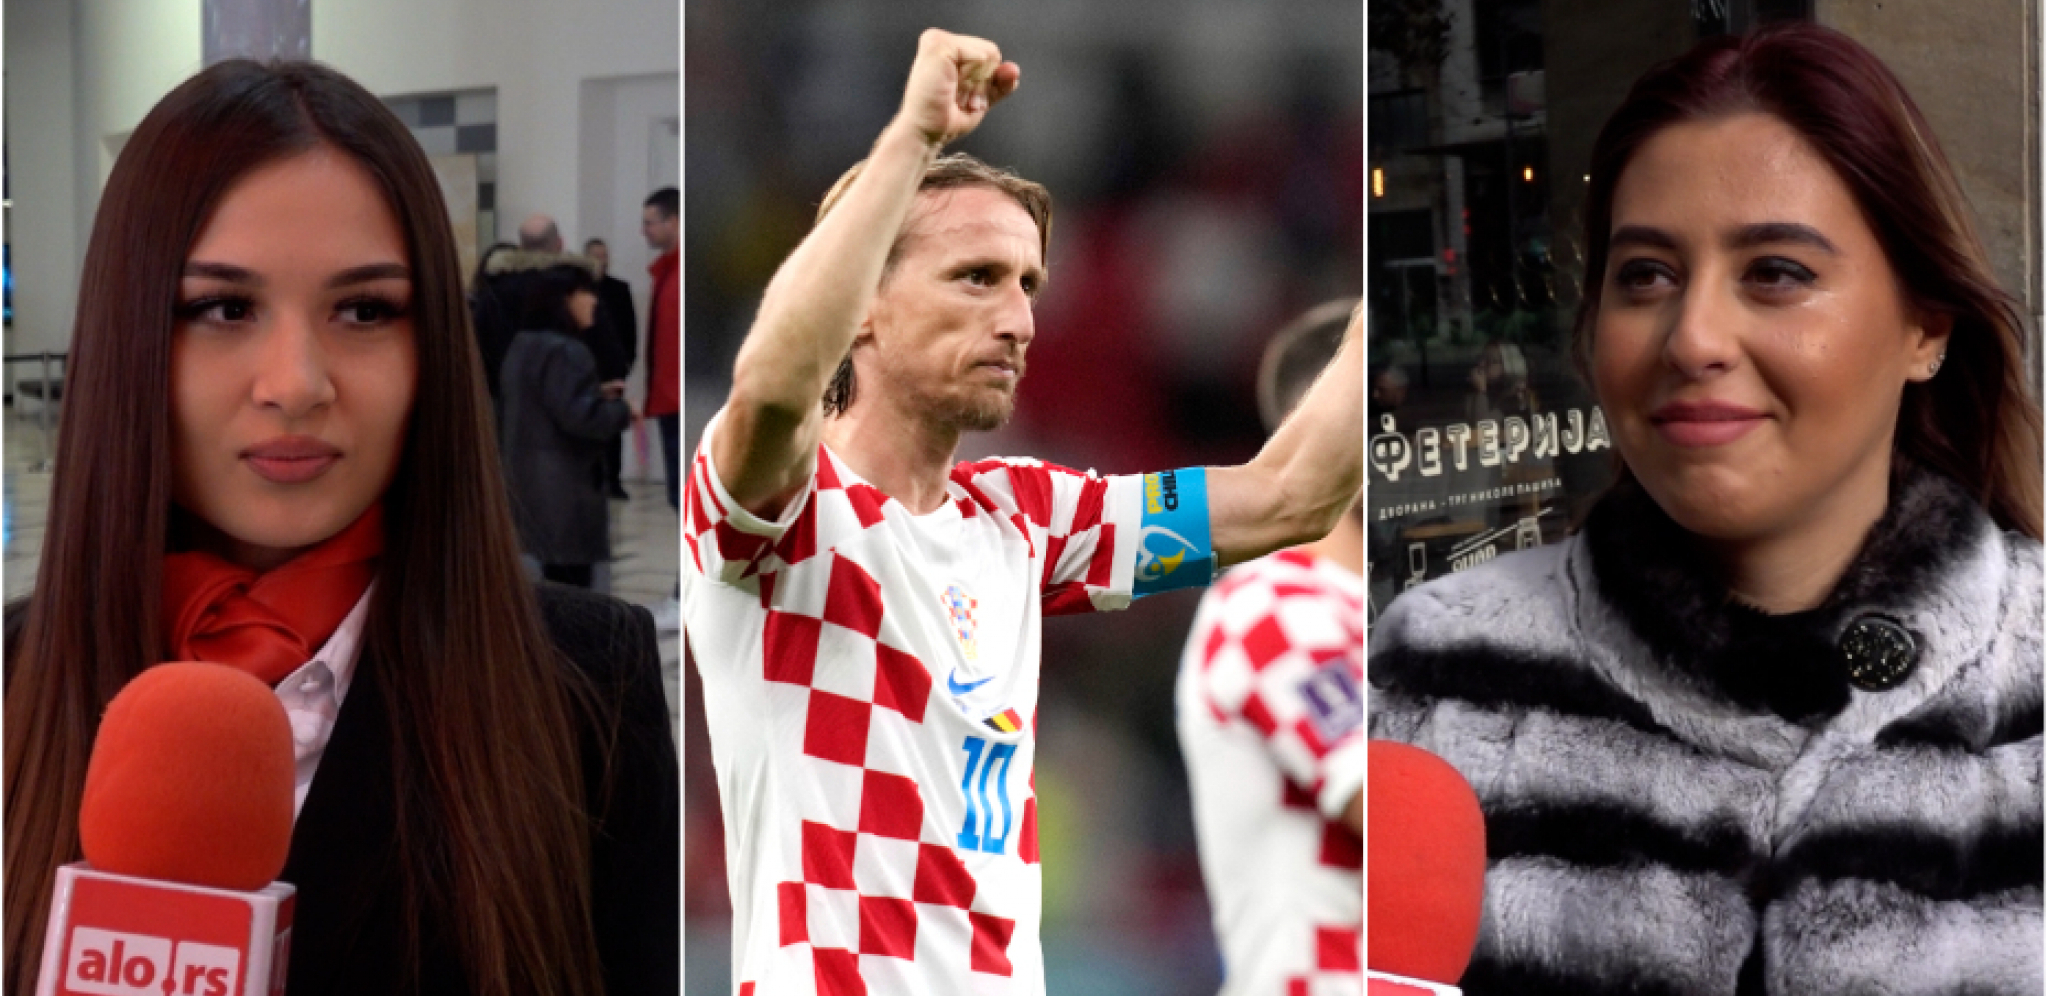 DA LI ĆE "VATRENI" IMATI PODRŠKU SRBA? Pitali smo Beograđane hoće li navijati za Hrvatsku na Svetskom prvenstvu i iznenadili se odgovorima (VIDEO)